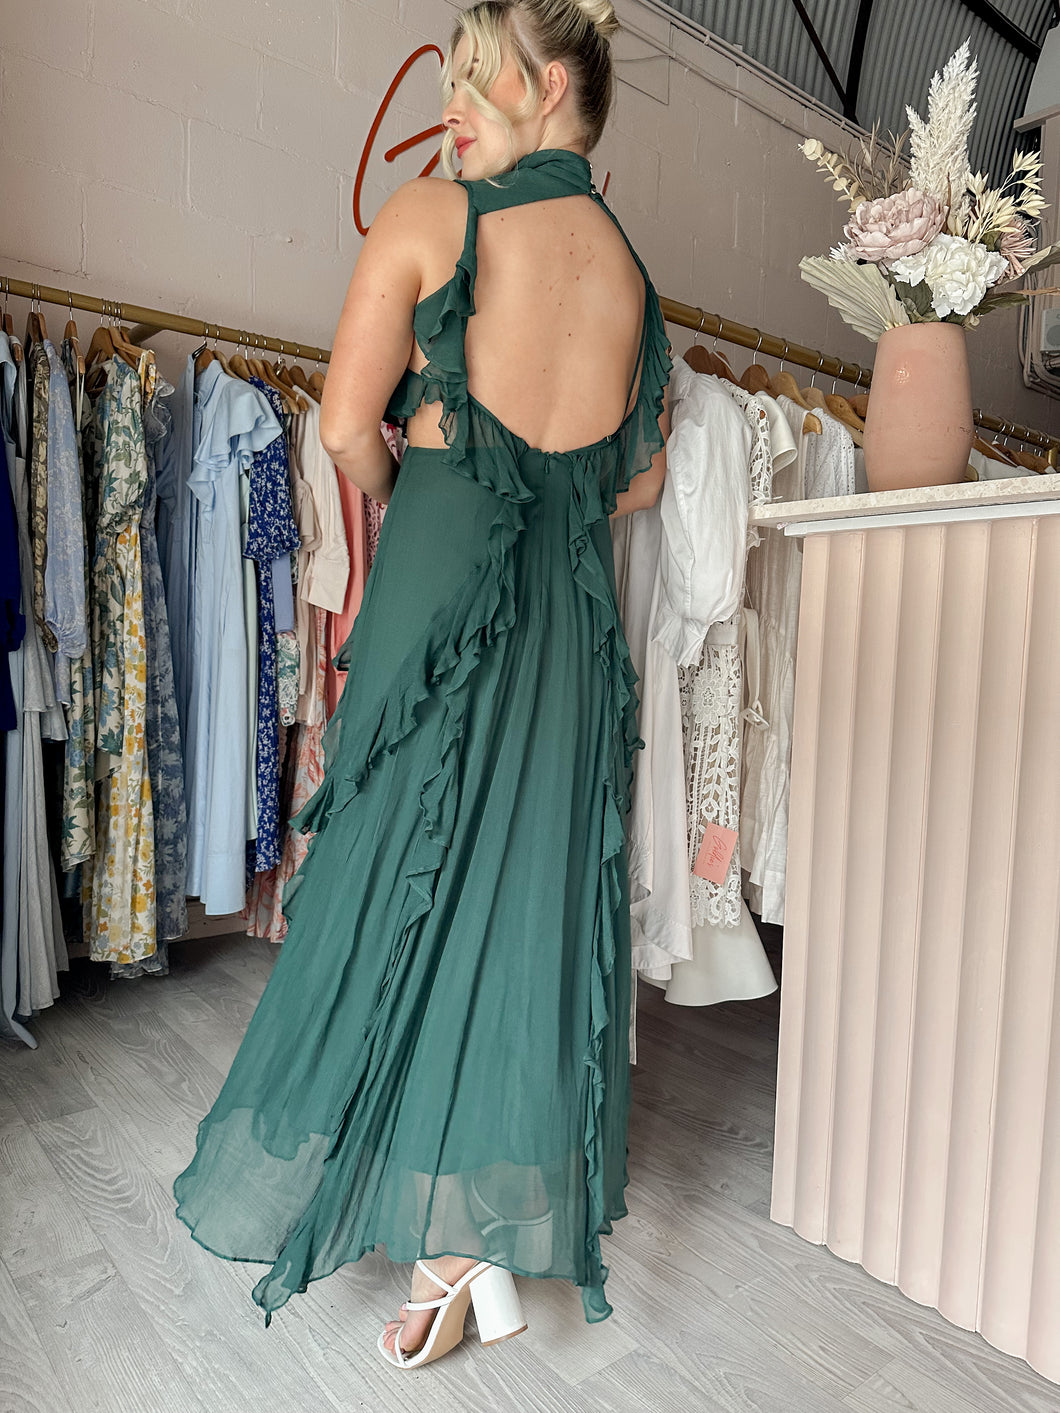 Shona Joy - Leonie Backless Frill Maxi Dress Rosemary (Size 12)